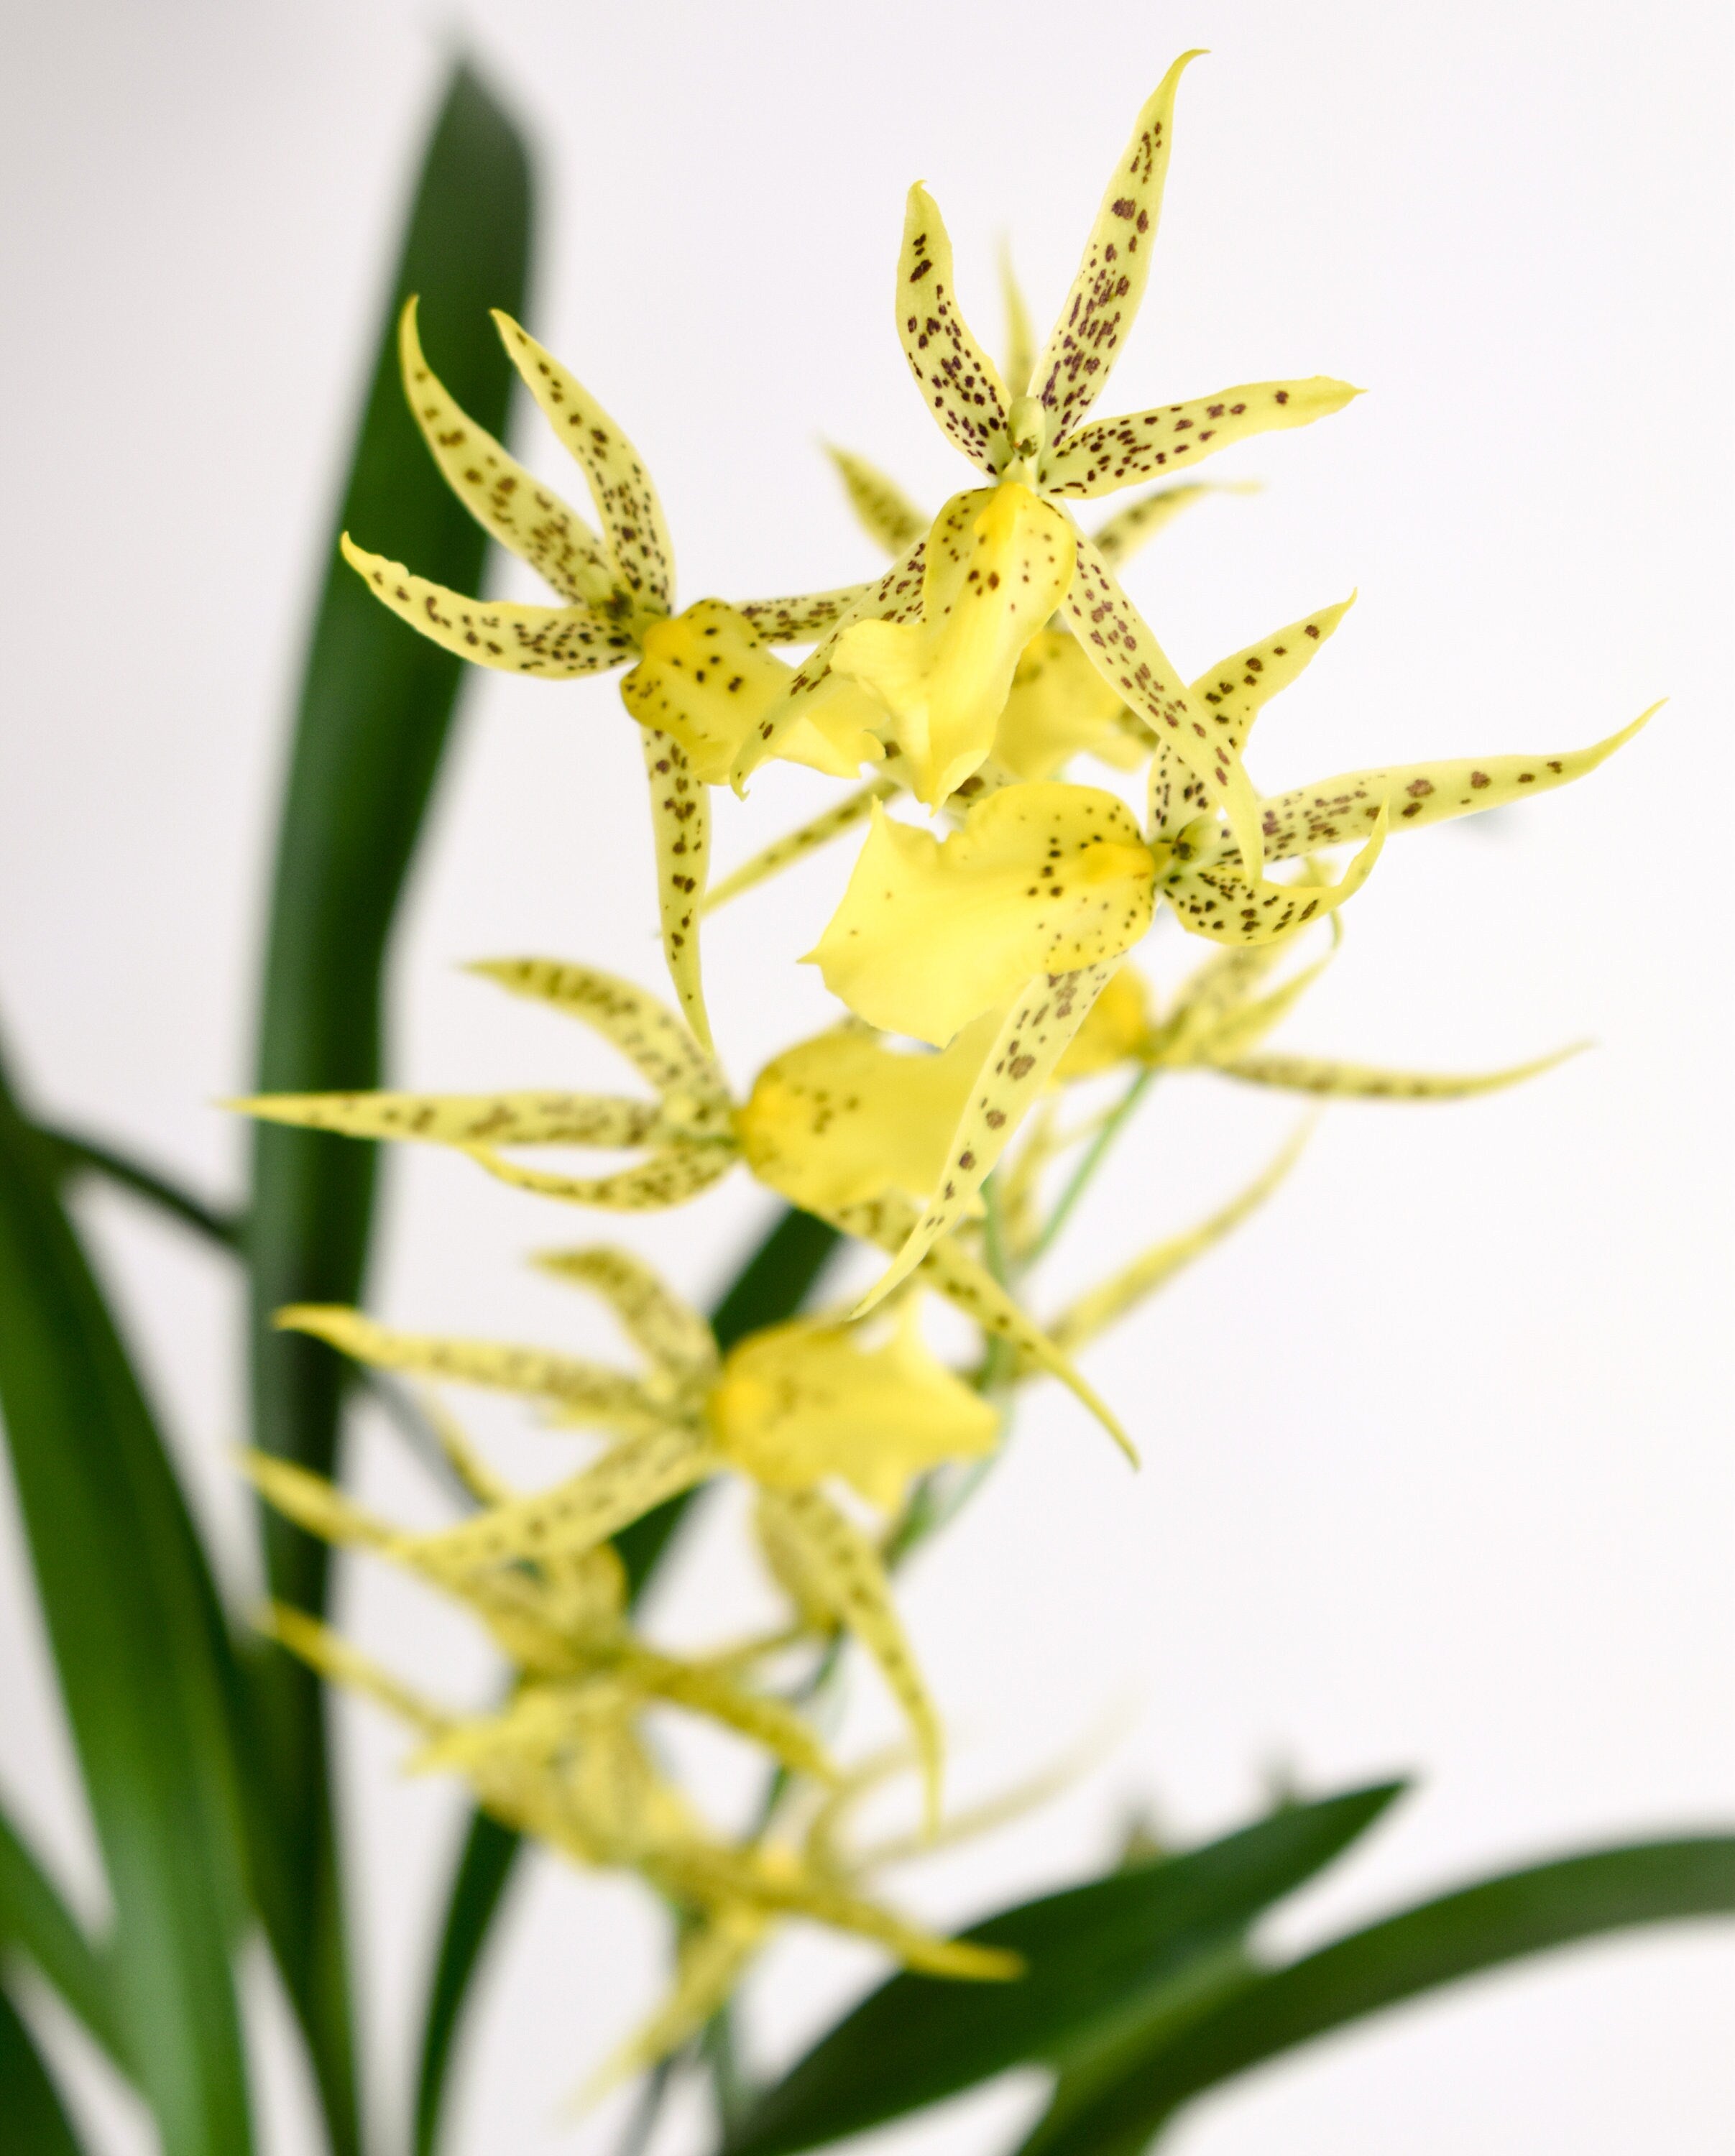 Spider Type Brassidium Nittany Gold 'Dr. John' IN SPIKE